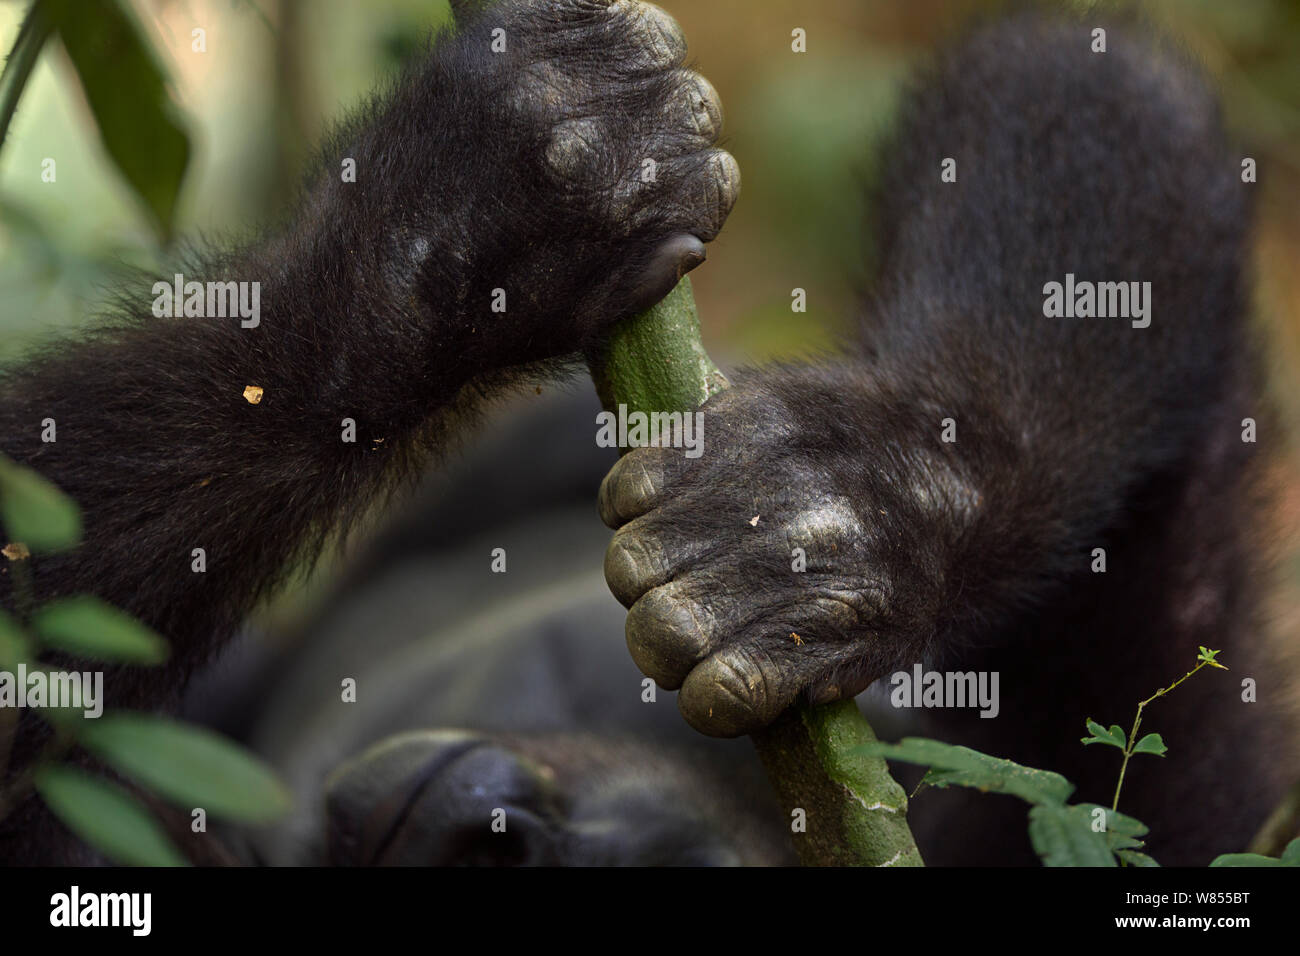 Gorille de plaine de l'ouest (Gorilla gorilla gorilla) mâle sub-adulte Kunga' 'âgés de 13 ans mains tenant un branche, Bai Hokou, Spécial forêt dense de Dzanga Sangha, République centrafricaine. Décembre 2011. Banque D'Images